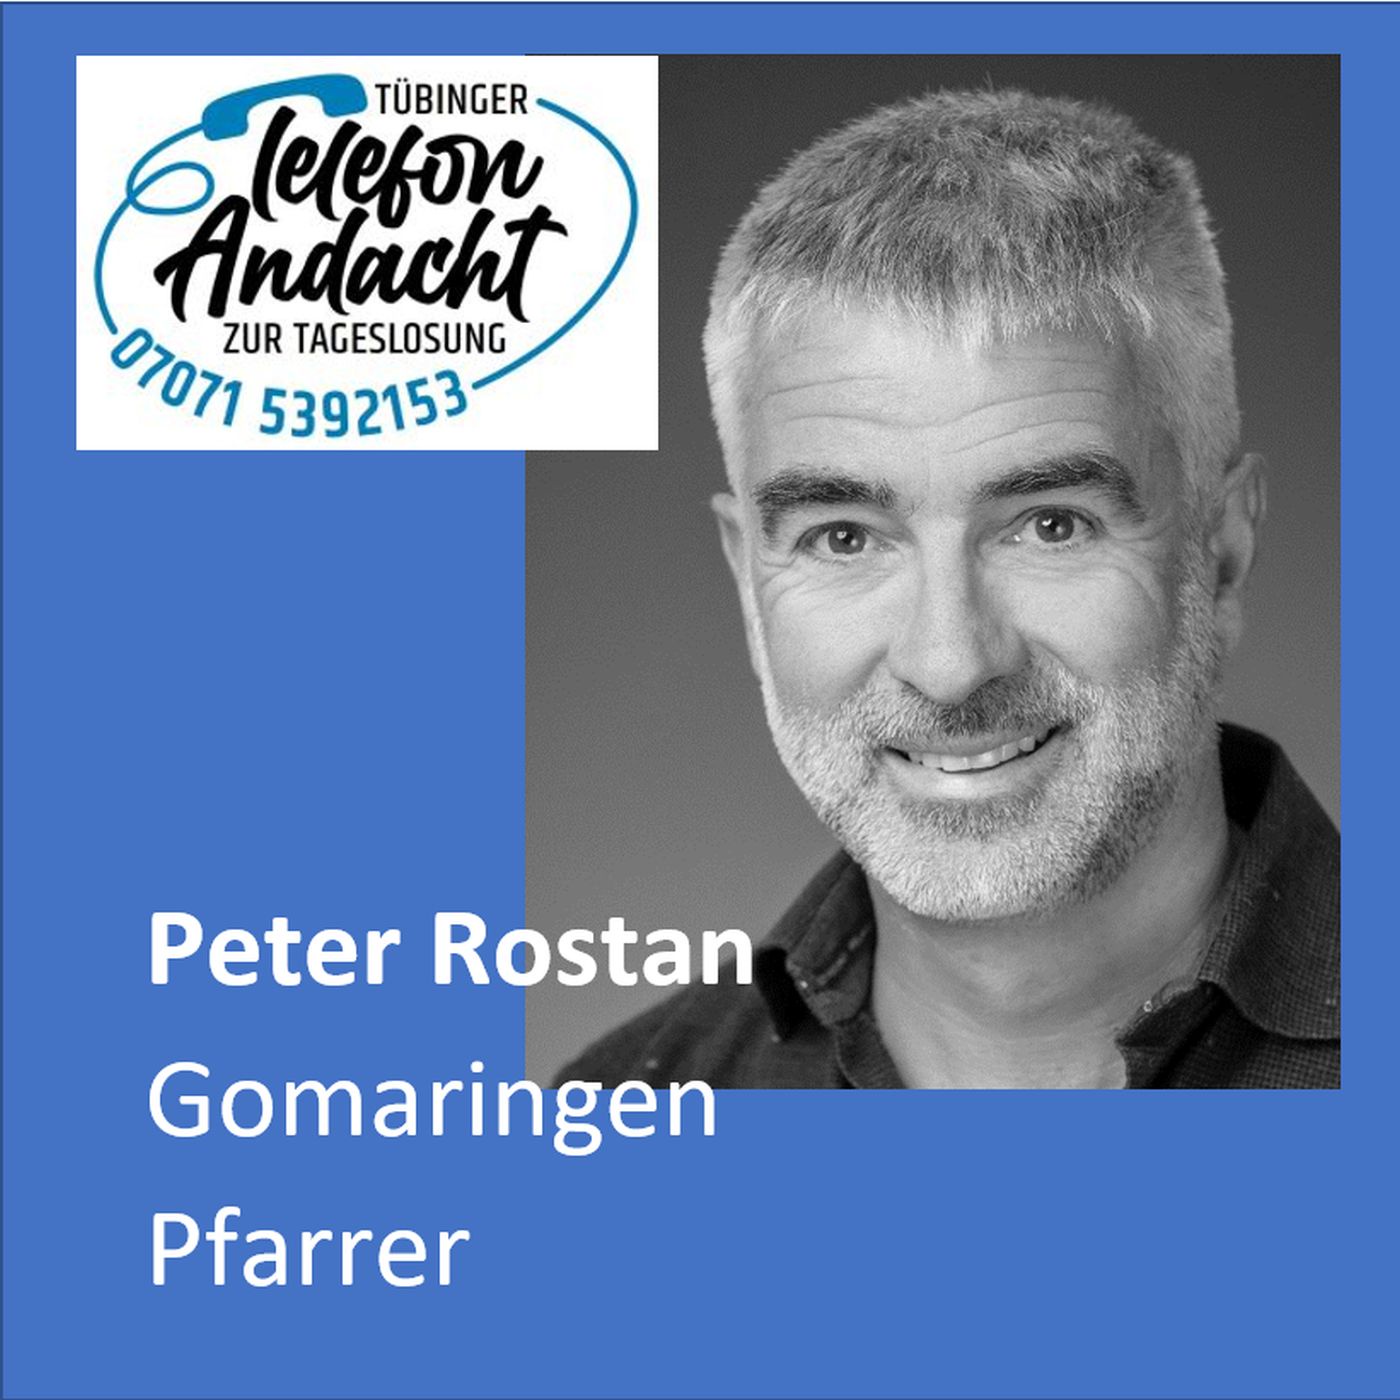 24 07 26 Peter Rostan